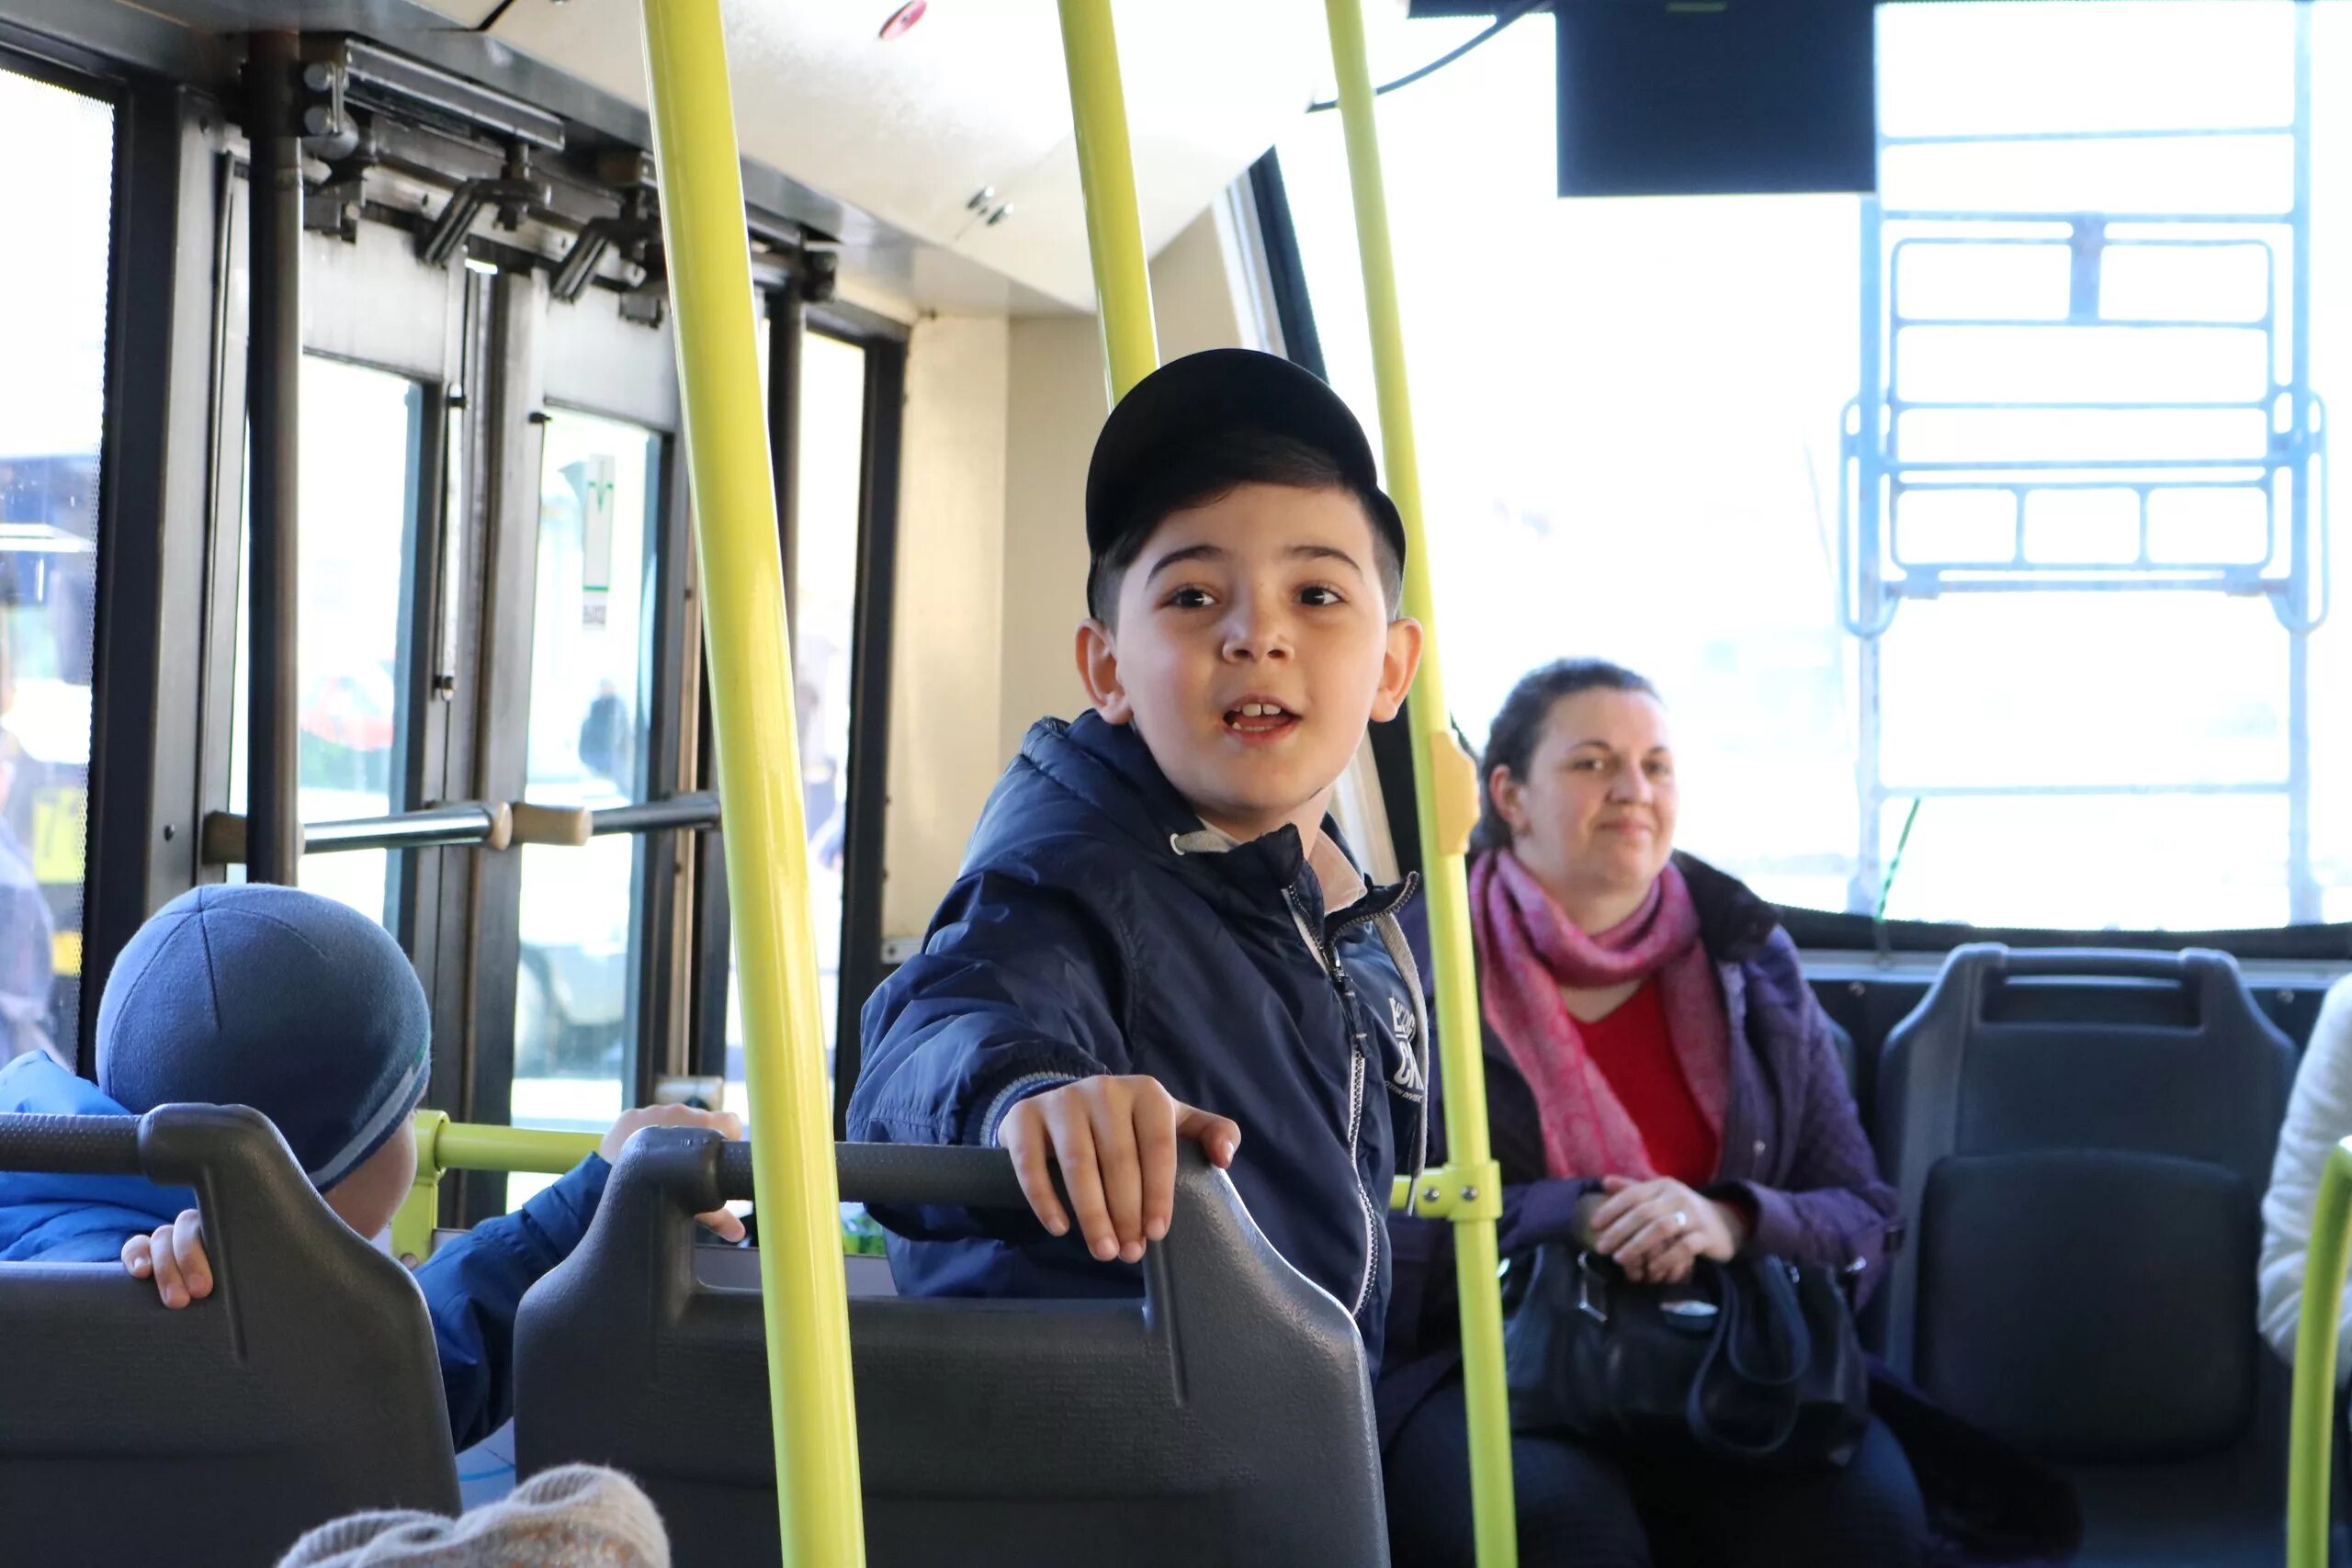 Автобус для детей. Общественный транспорт для детей. Школьники в автобусе. Подростки в автобусе. Пассажиры с детьми в автобусе